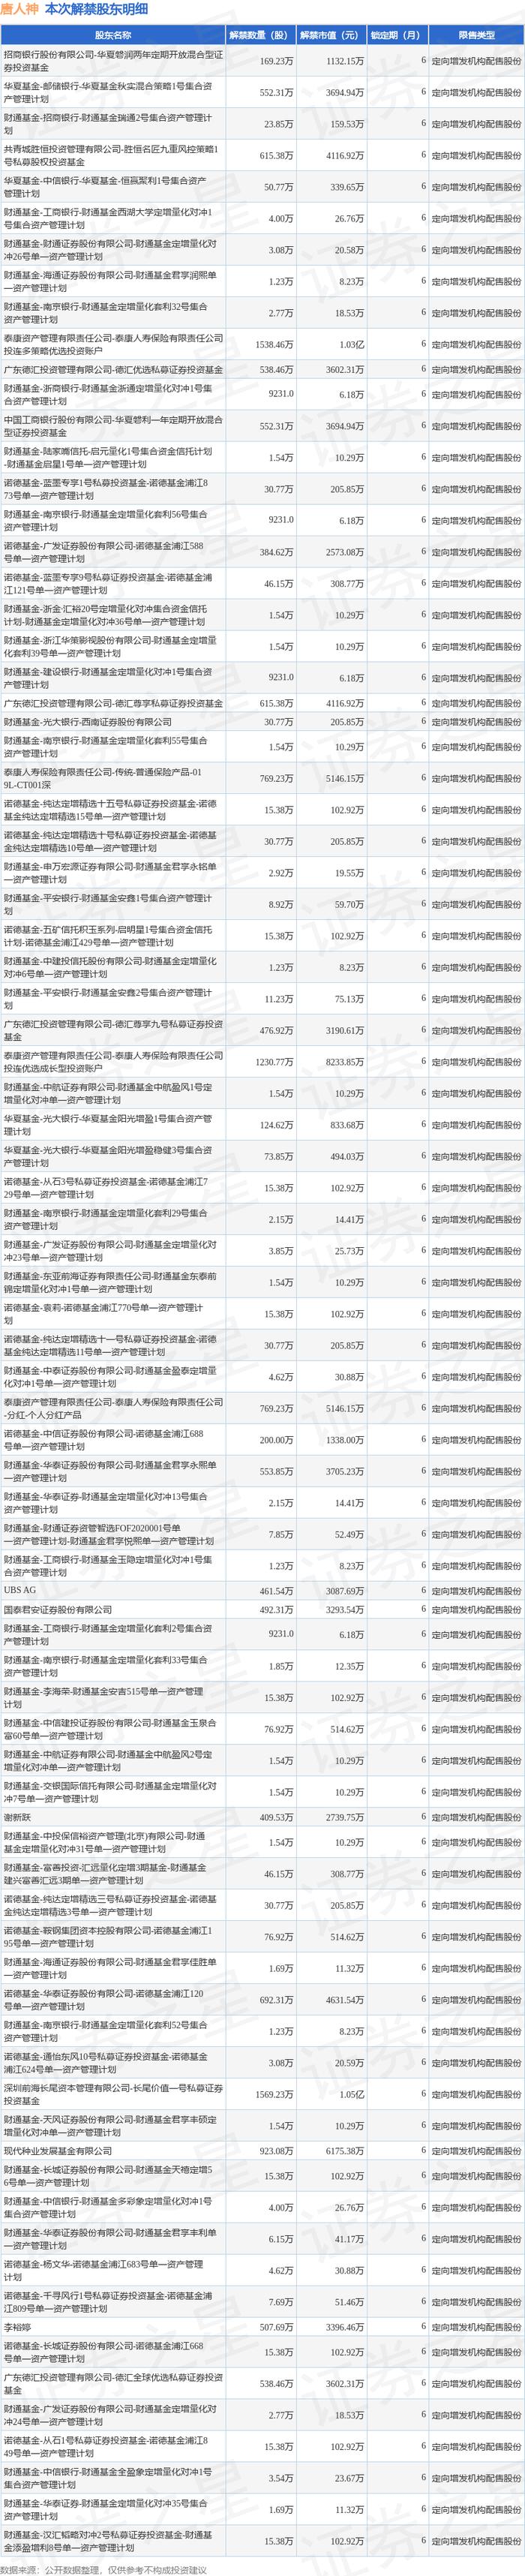 唐人神（002567）1.55亿股限售股将于6月26日解禁上市，占总股本11.16%